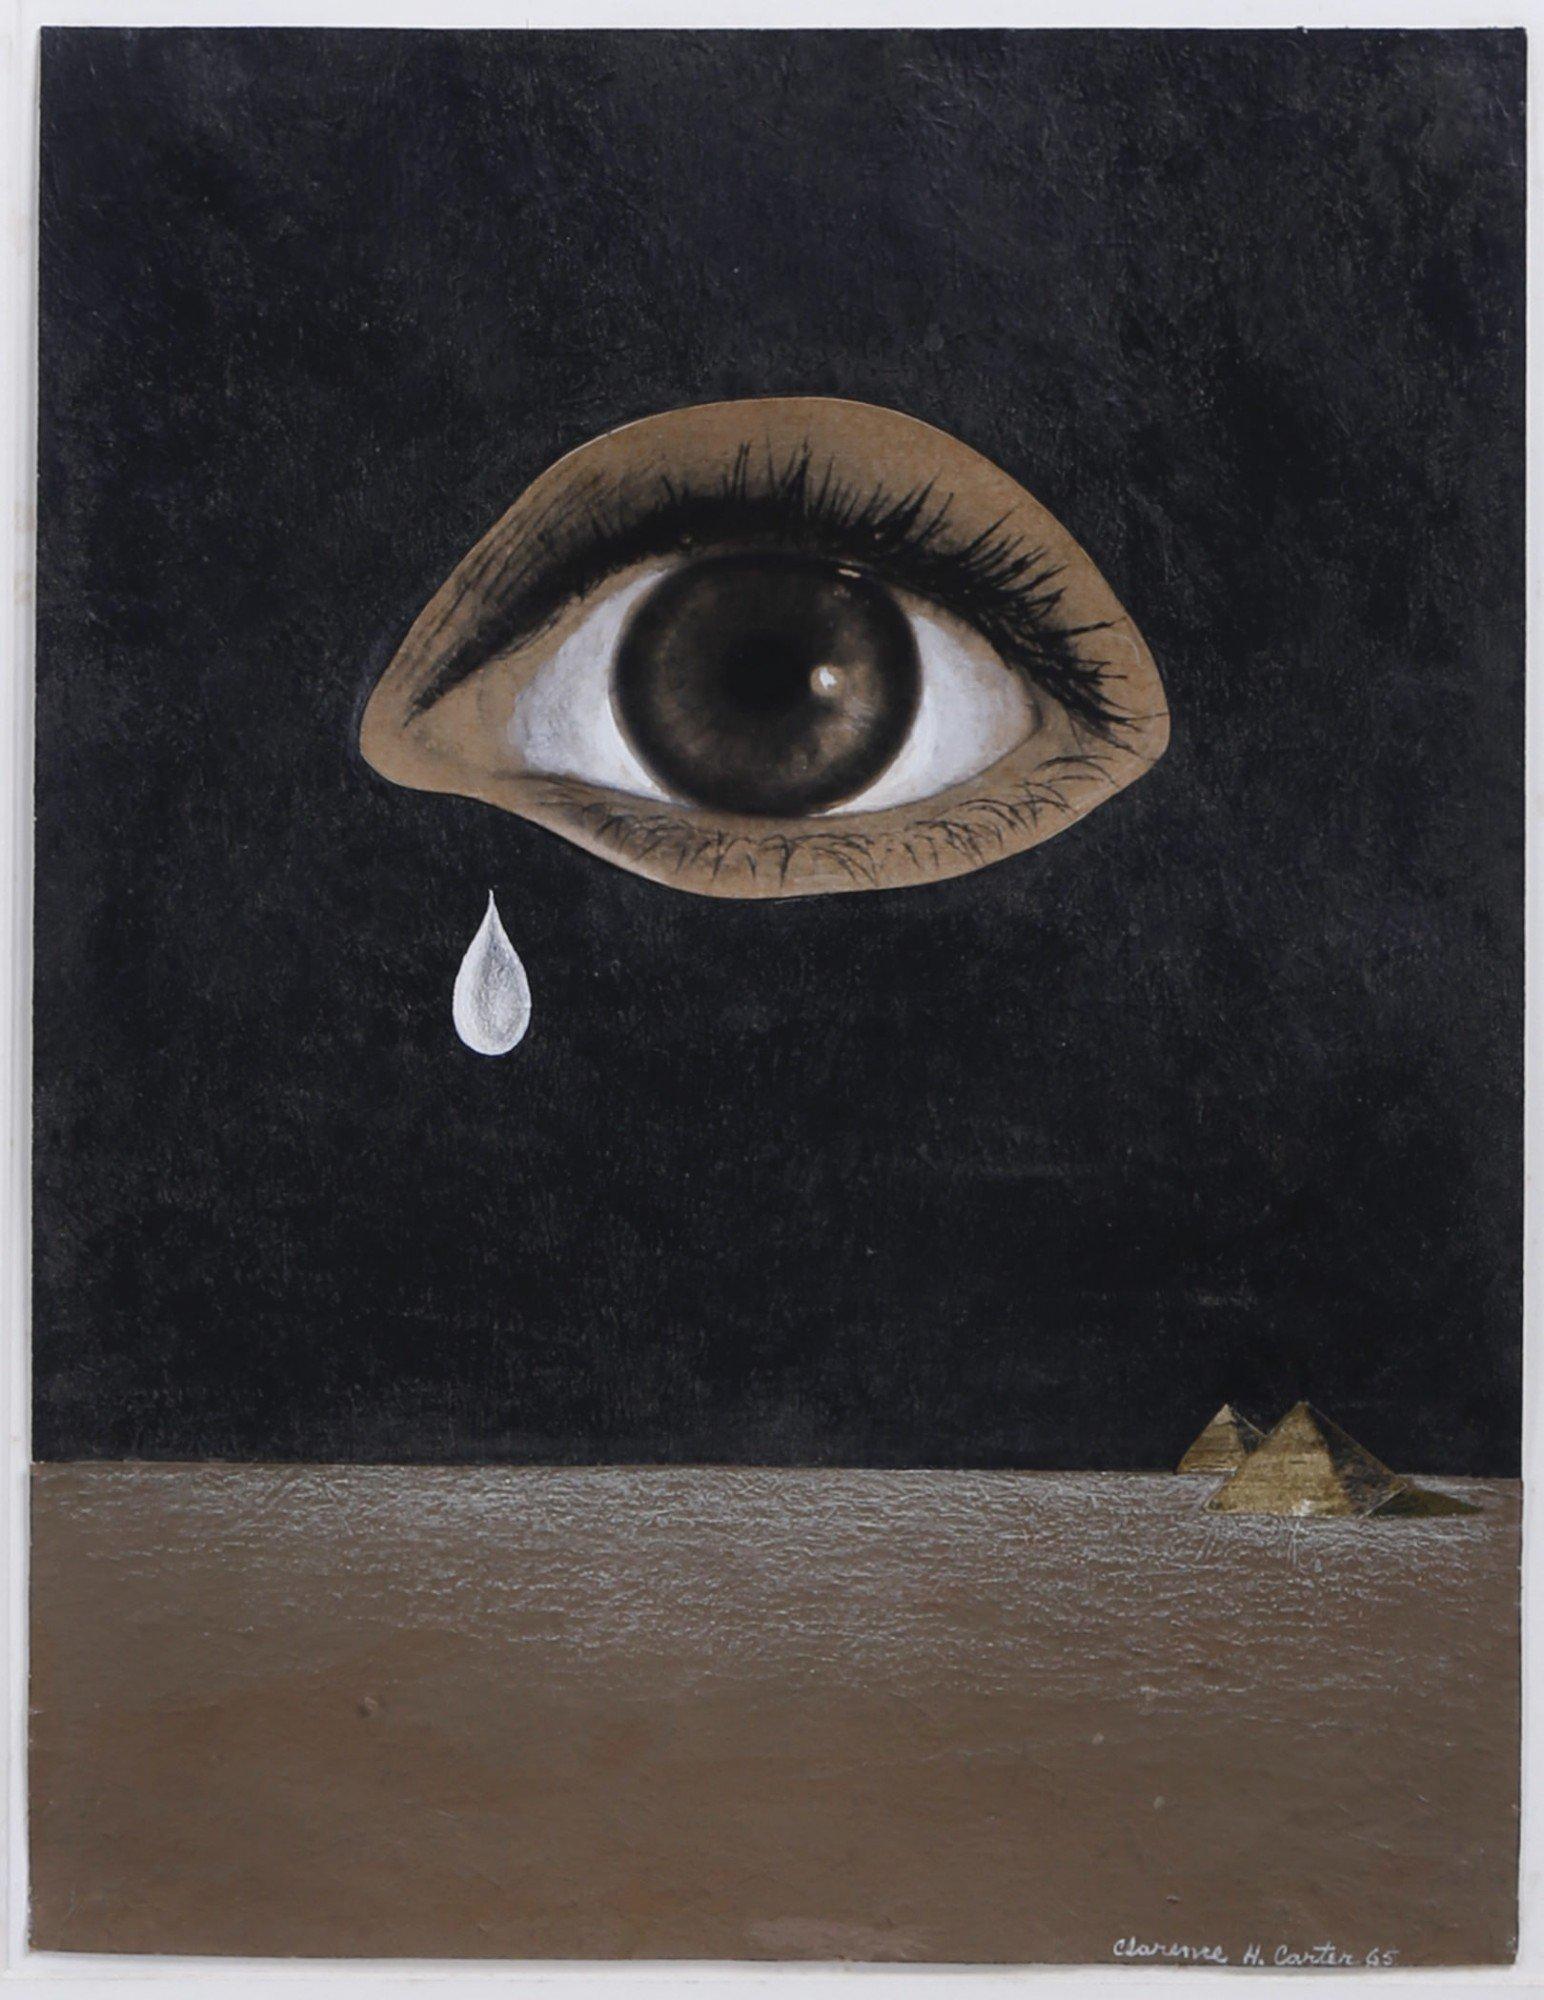 Das Auge der Wste, figurale abstrakte Collage, surrealistisches Gemlde in Schwarz und Braun – Mixed Media Art von Clarence Holbrook Carter